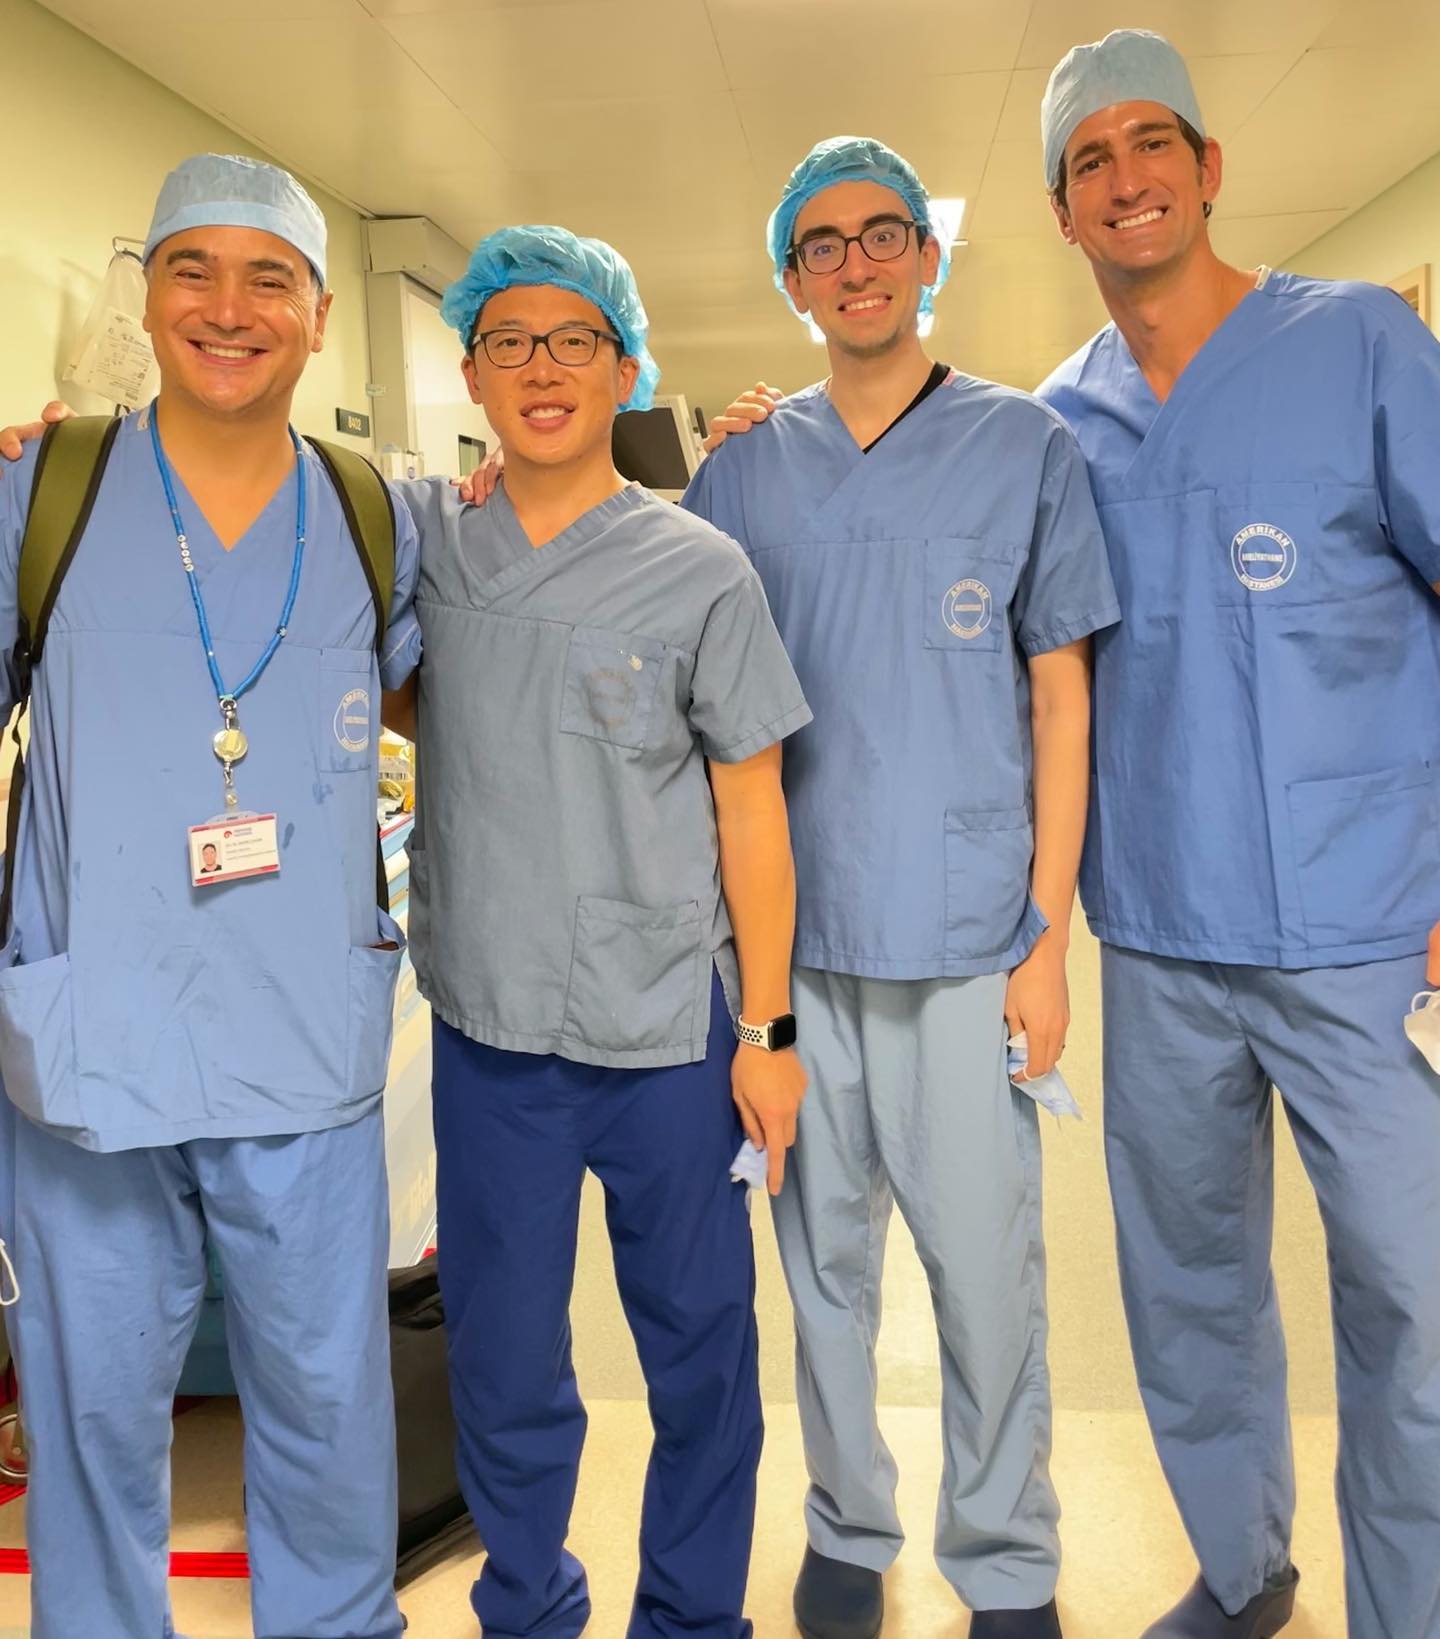 Dr. Baris Çakir, Dr. Chang y Saigon y, Dr. Rubén Guilarte – Estambul (Turquía) Yale, Mount Sinai (EEUU) y Madrid (España)